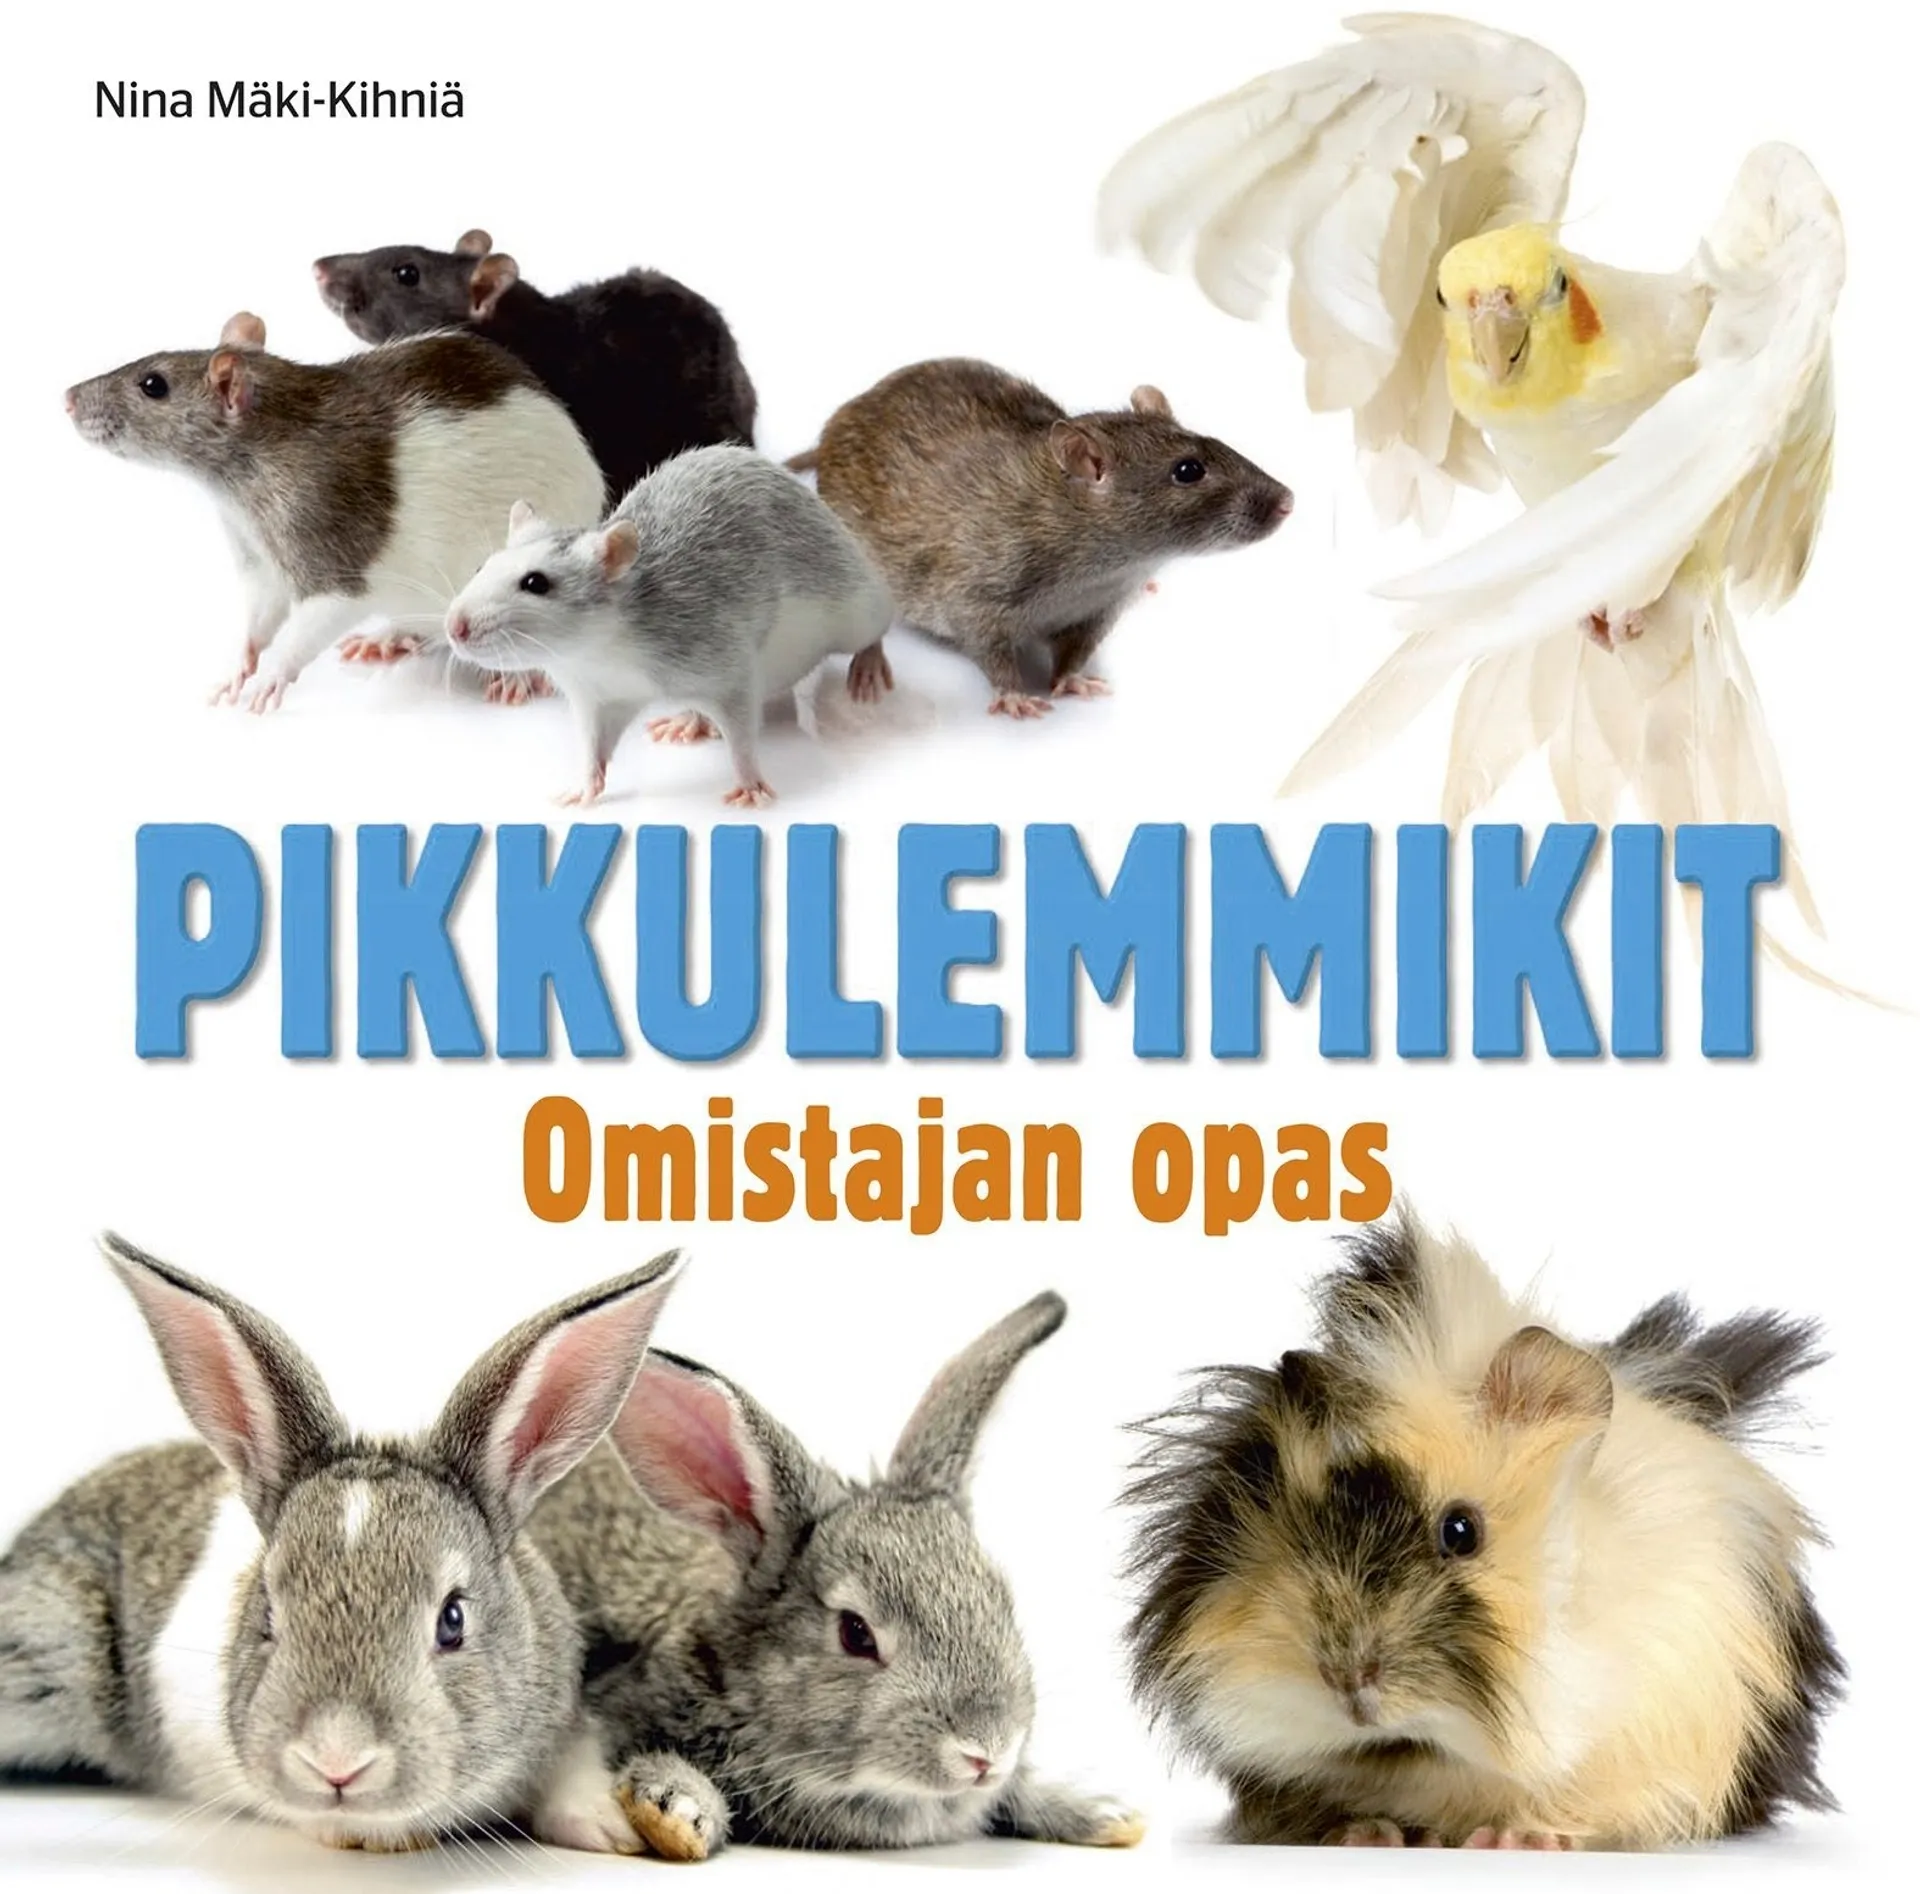 Mäki-Kihniä, Pikkulemmikit - Omistajan opas : tutkimusmatka pienten lemmikkien maailmaan